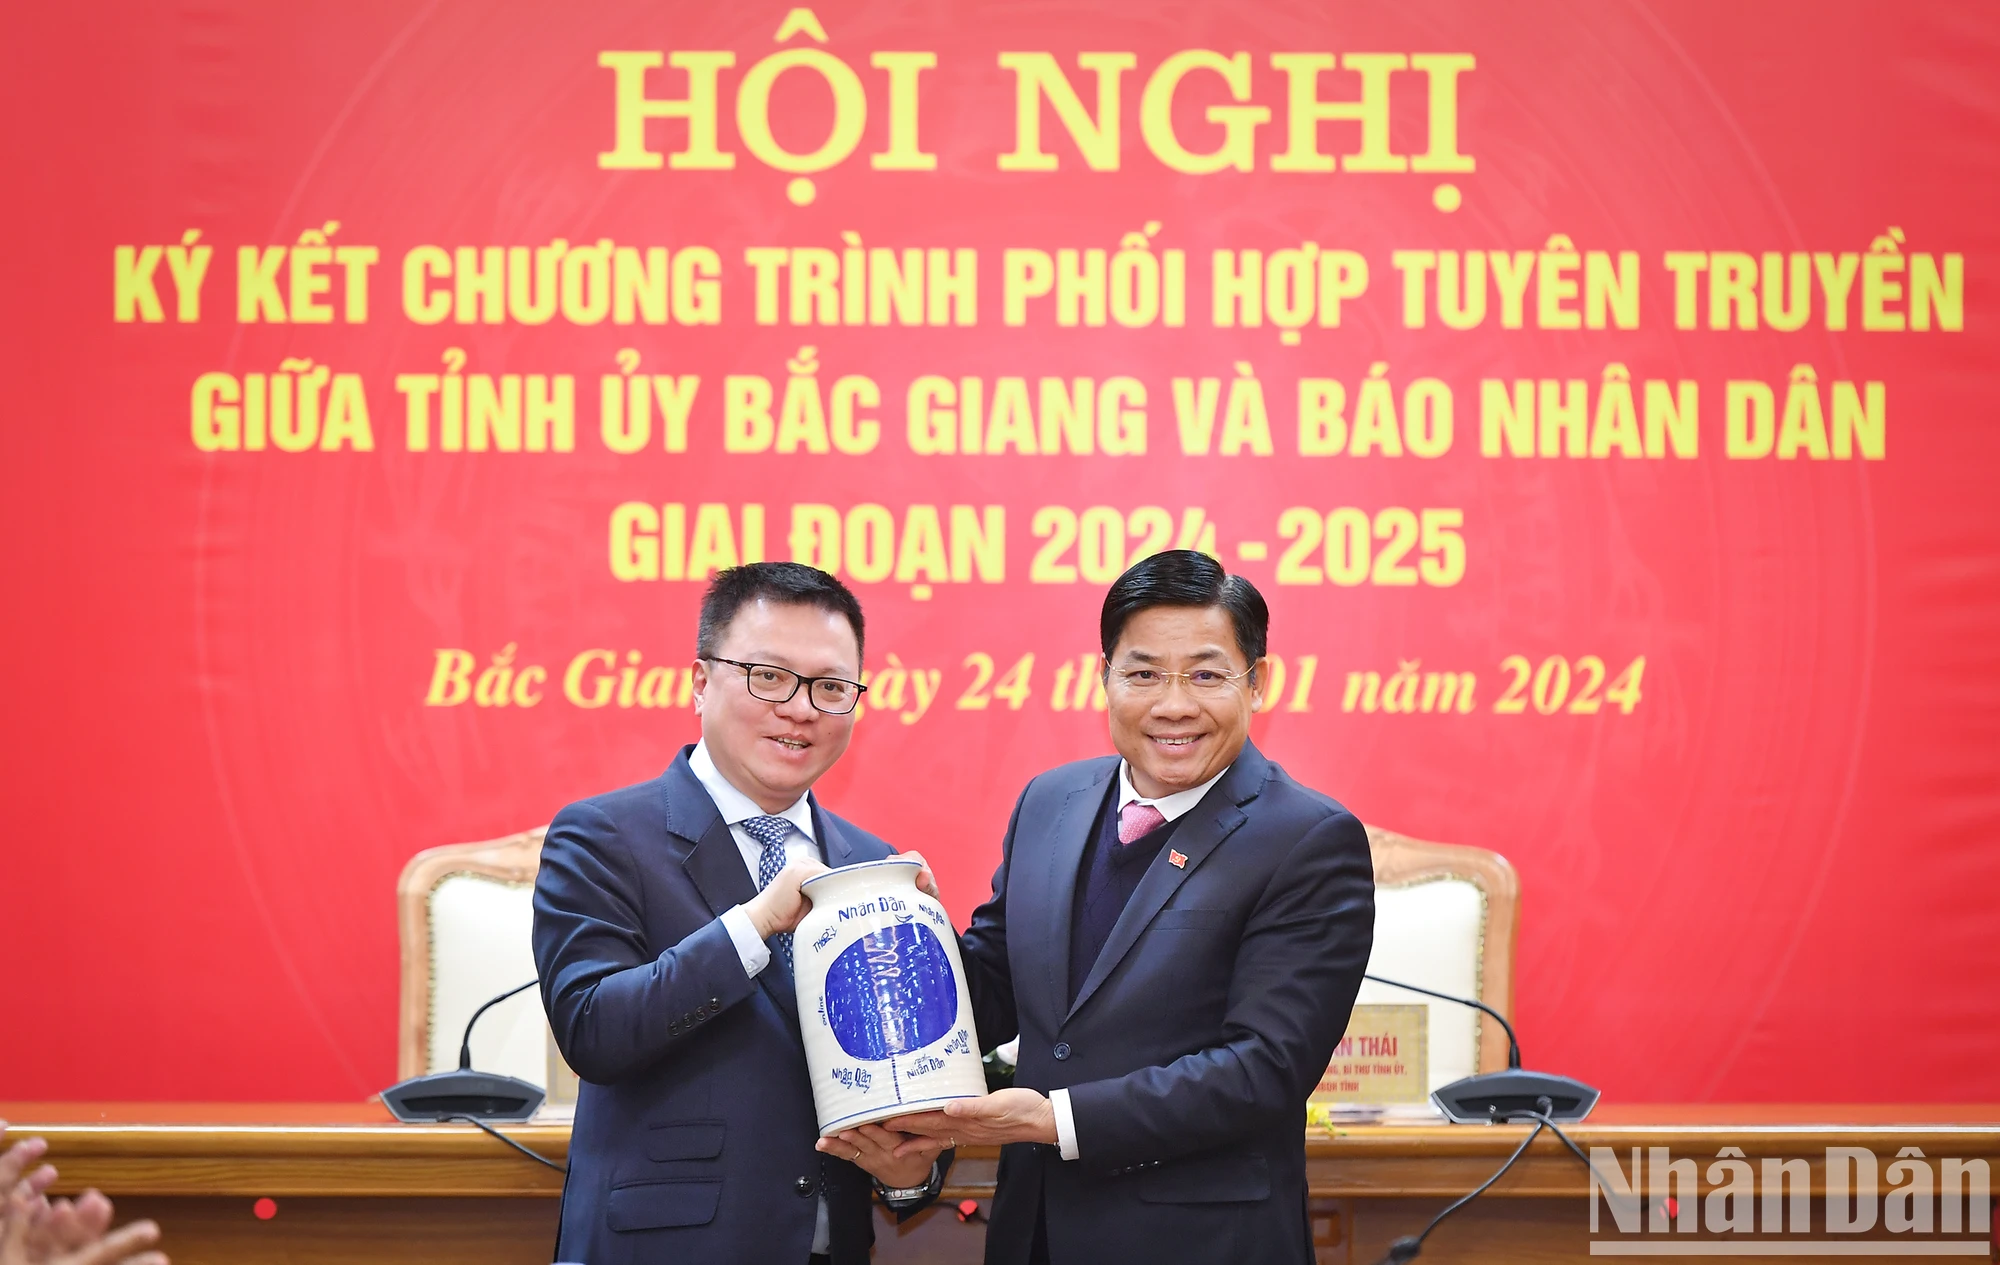 bao nhan dan va tinh uy bac giang ky ket chuong trinh phoi hop tuyen truyen giai doan 2024 2025 hinh 3